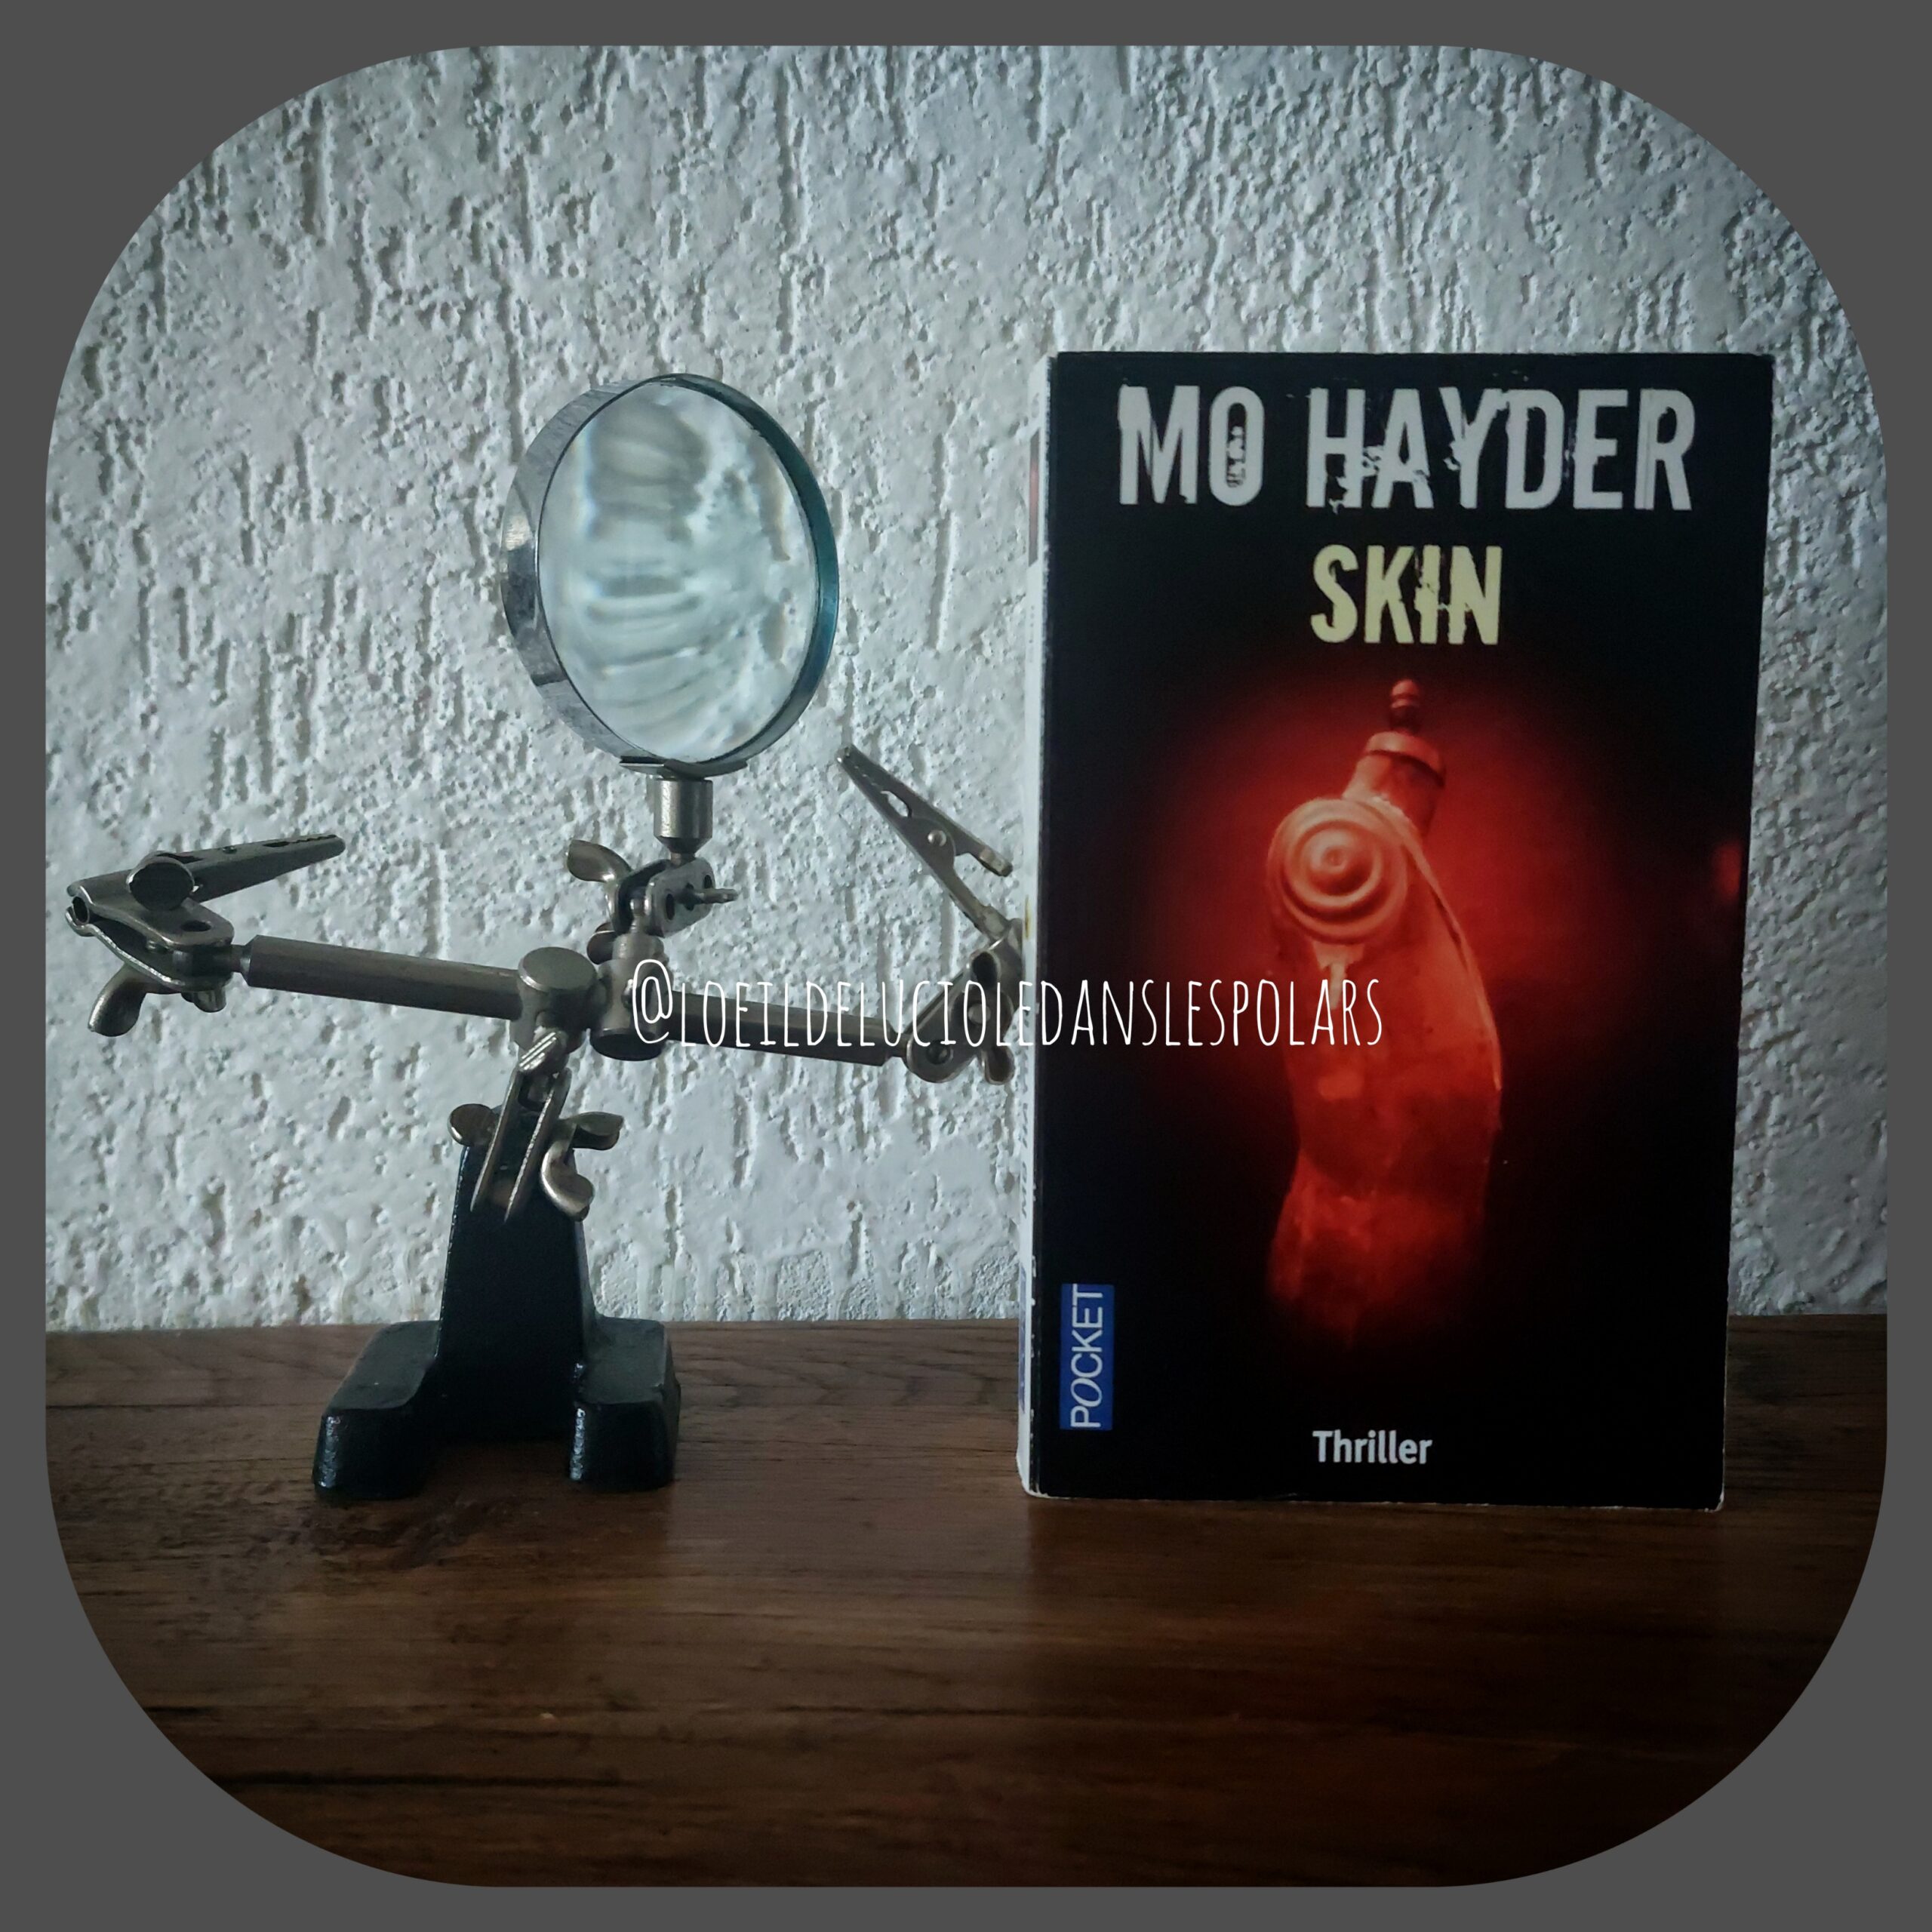 Skin de Mo Hayder